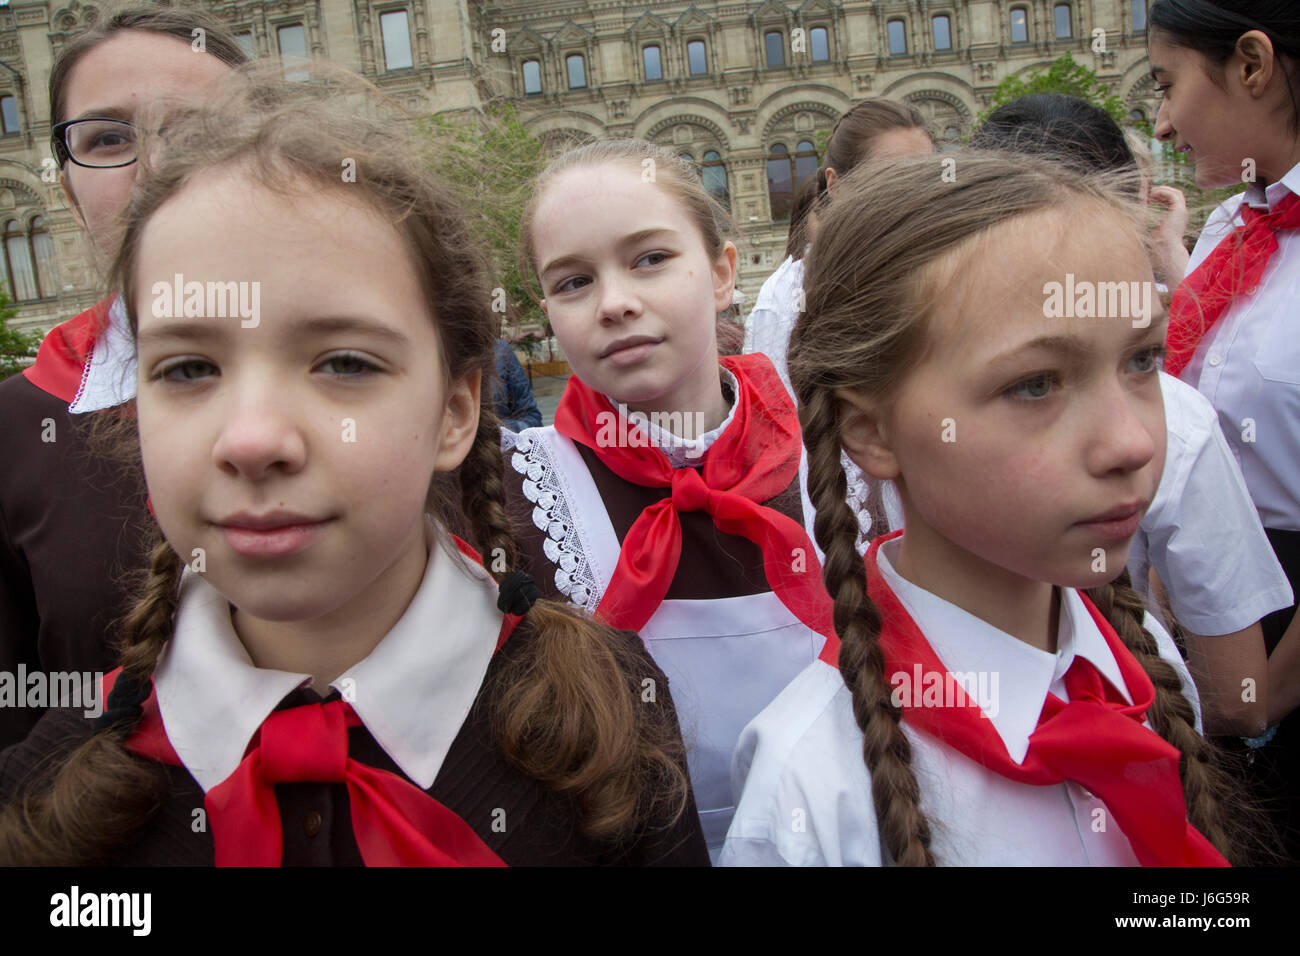 Moscou, Russie. 21 mai, 2017. Les enfants assistent à la cérémonie  officielle d'attacher un foulard rouge autour du cou, symbole de leur  initiation à la jeune Jeunes Pionniers groupe communiste, créé en